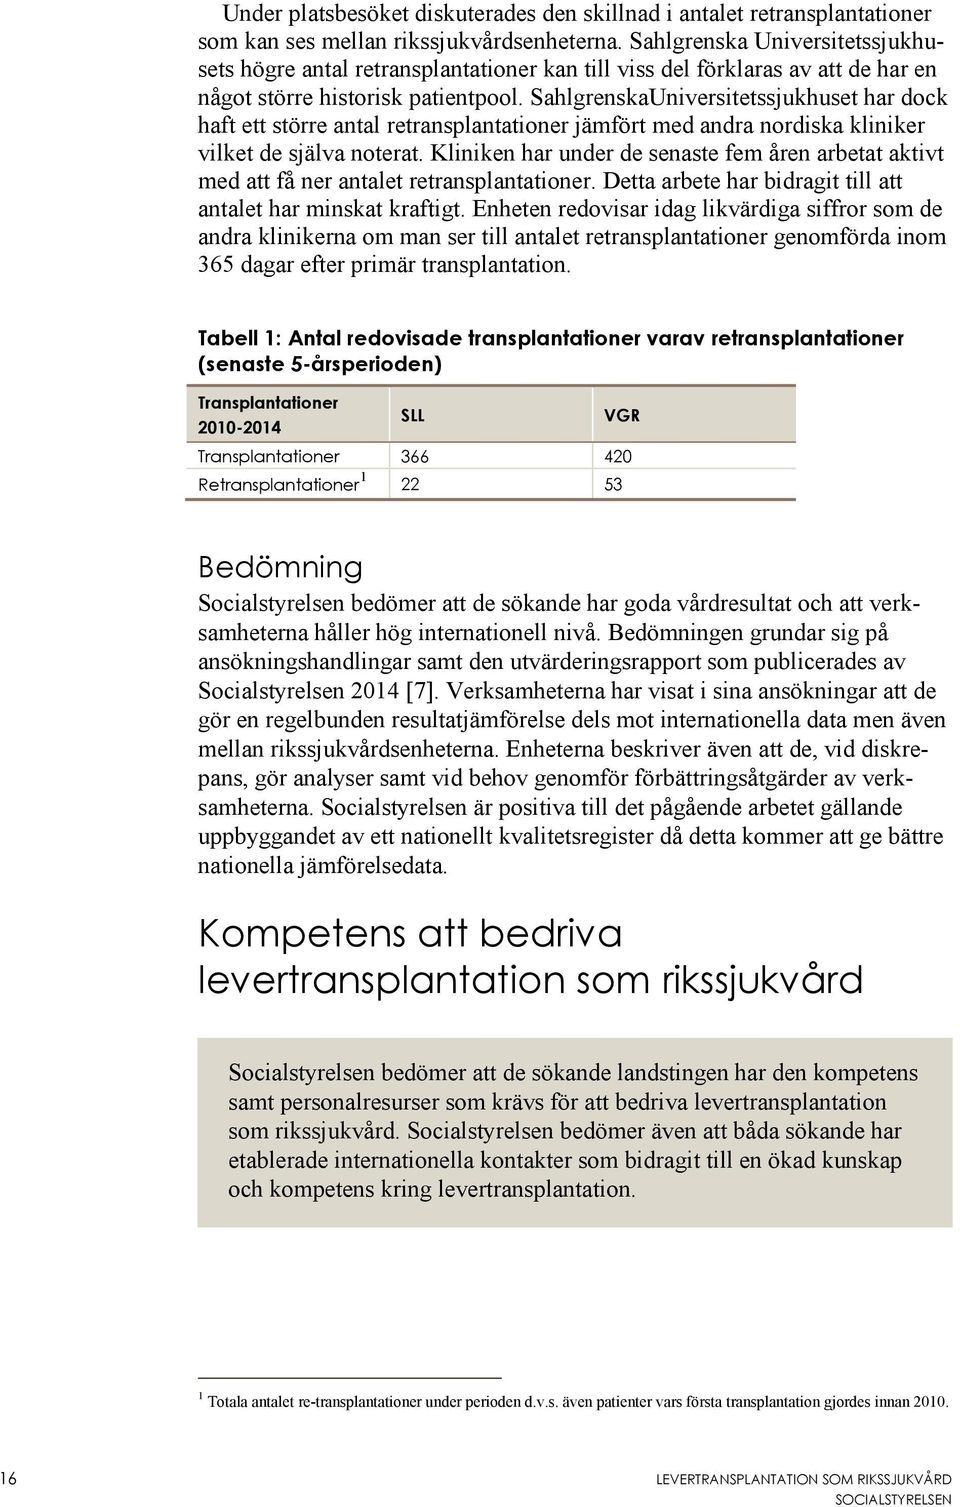 SahlgrenskaUniversitetssjukhuset har dock haft ett större antal retransplantationer jämfört med andra nordiska kliniker vilket de själva noterat.